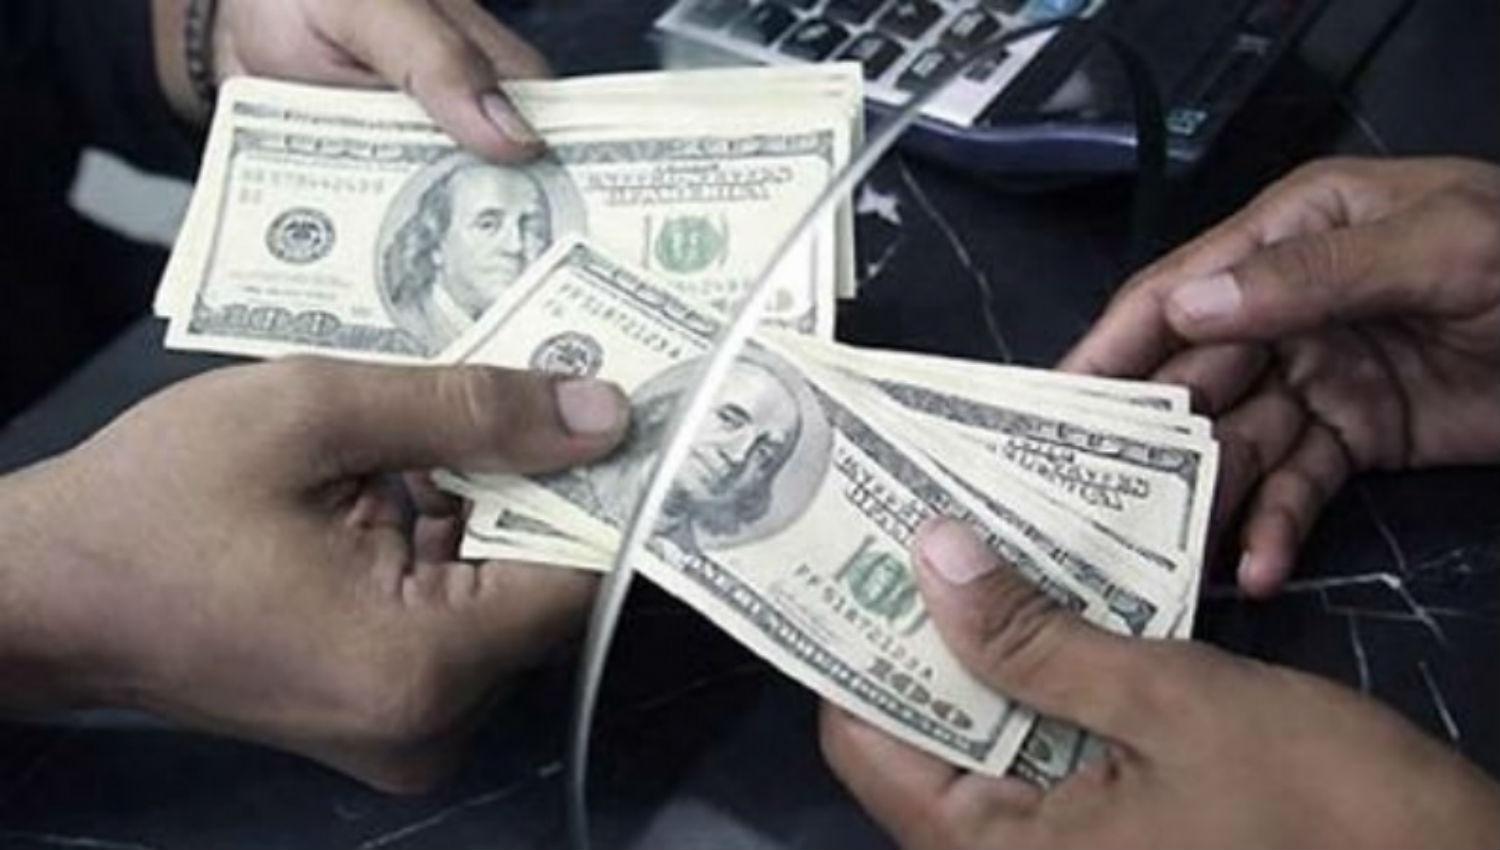 Dos salteños intentaban vender 10.000 dólares falsos en el sur tucumano